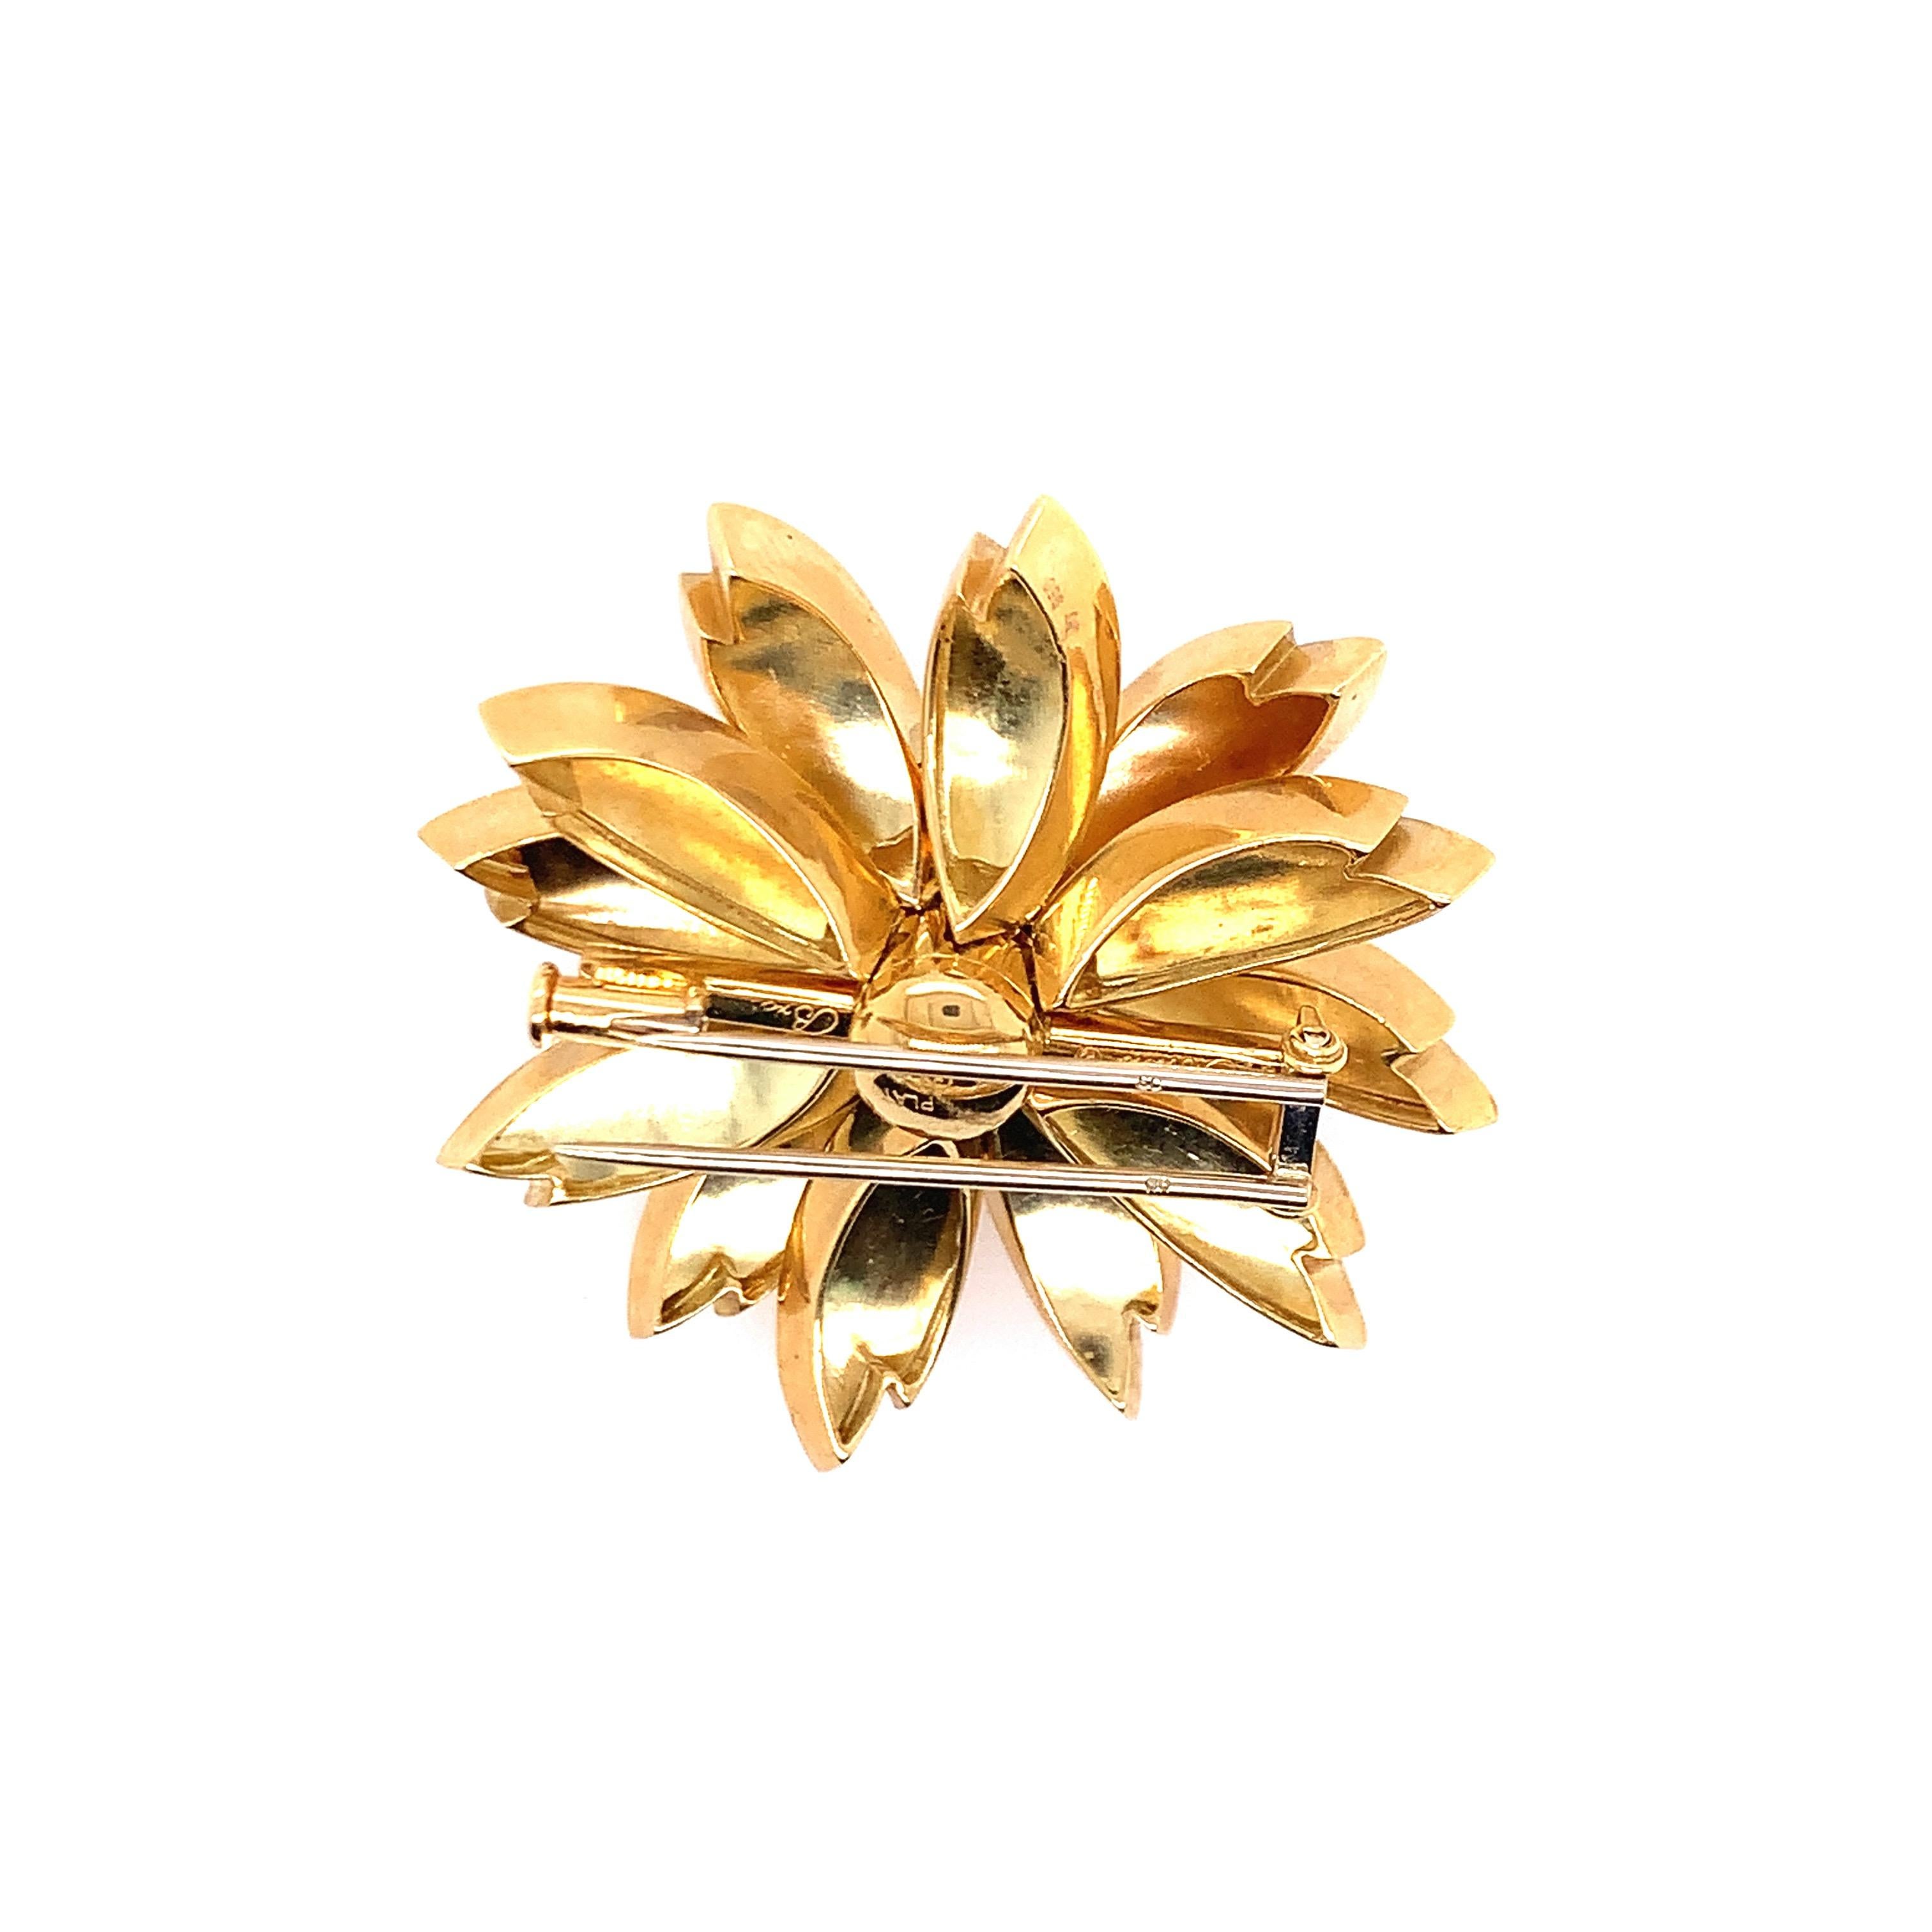 Création des frères Aletto, cette broche florale est composée de diamants et de saphir sertis sur de l'or jaune 18 carats. Il y a 13 saphirs ronds qui pèsent environ 1,5 million d'euros.  1,50 carats, et 6 diamants ronds sertis en collet pèsent